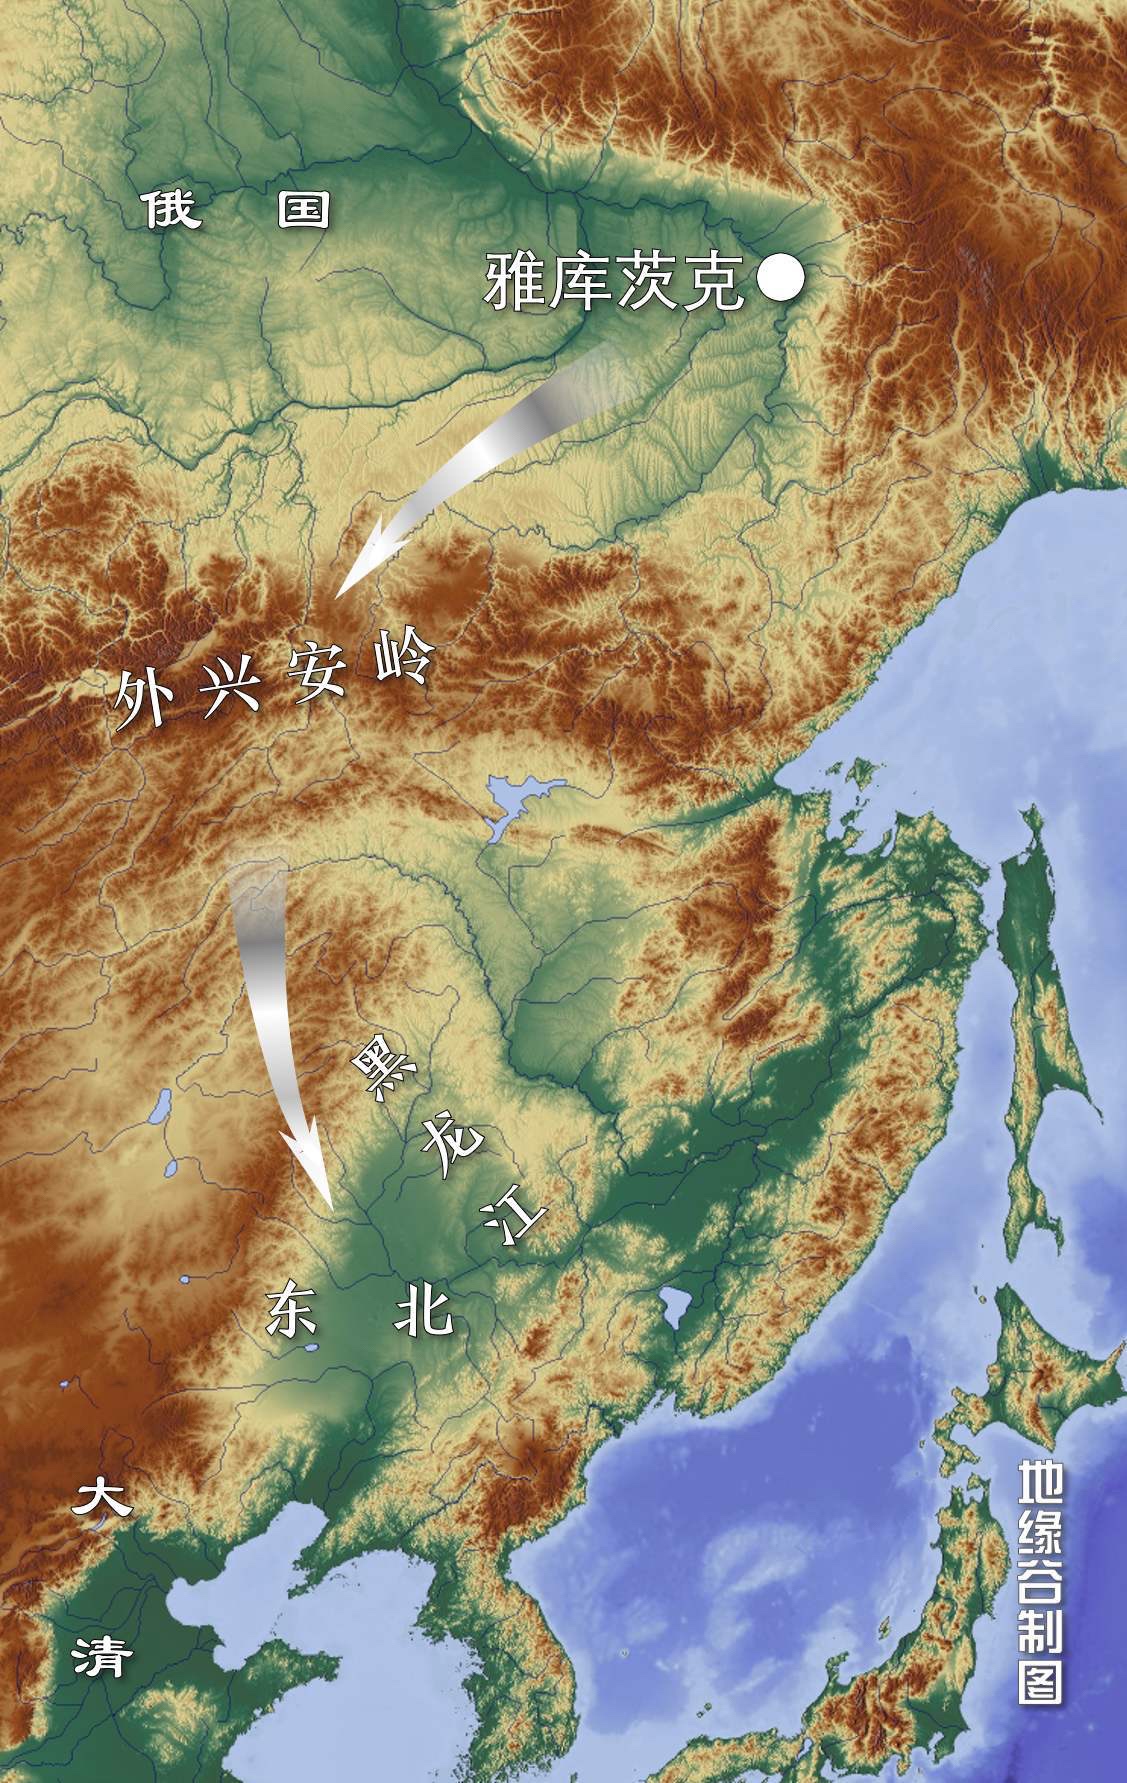 俄罗斯侵略中国的黑龙江流域-民族史